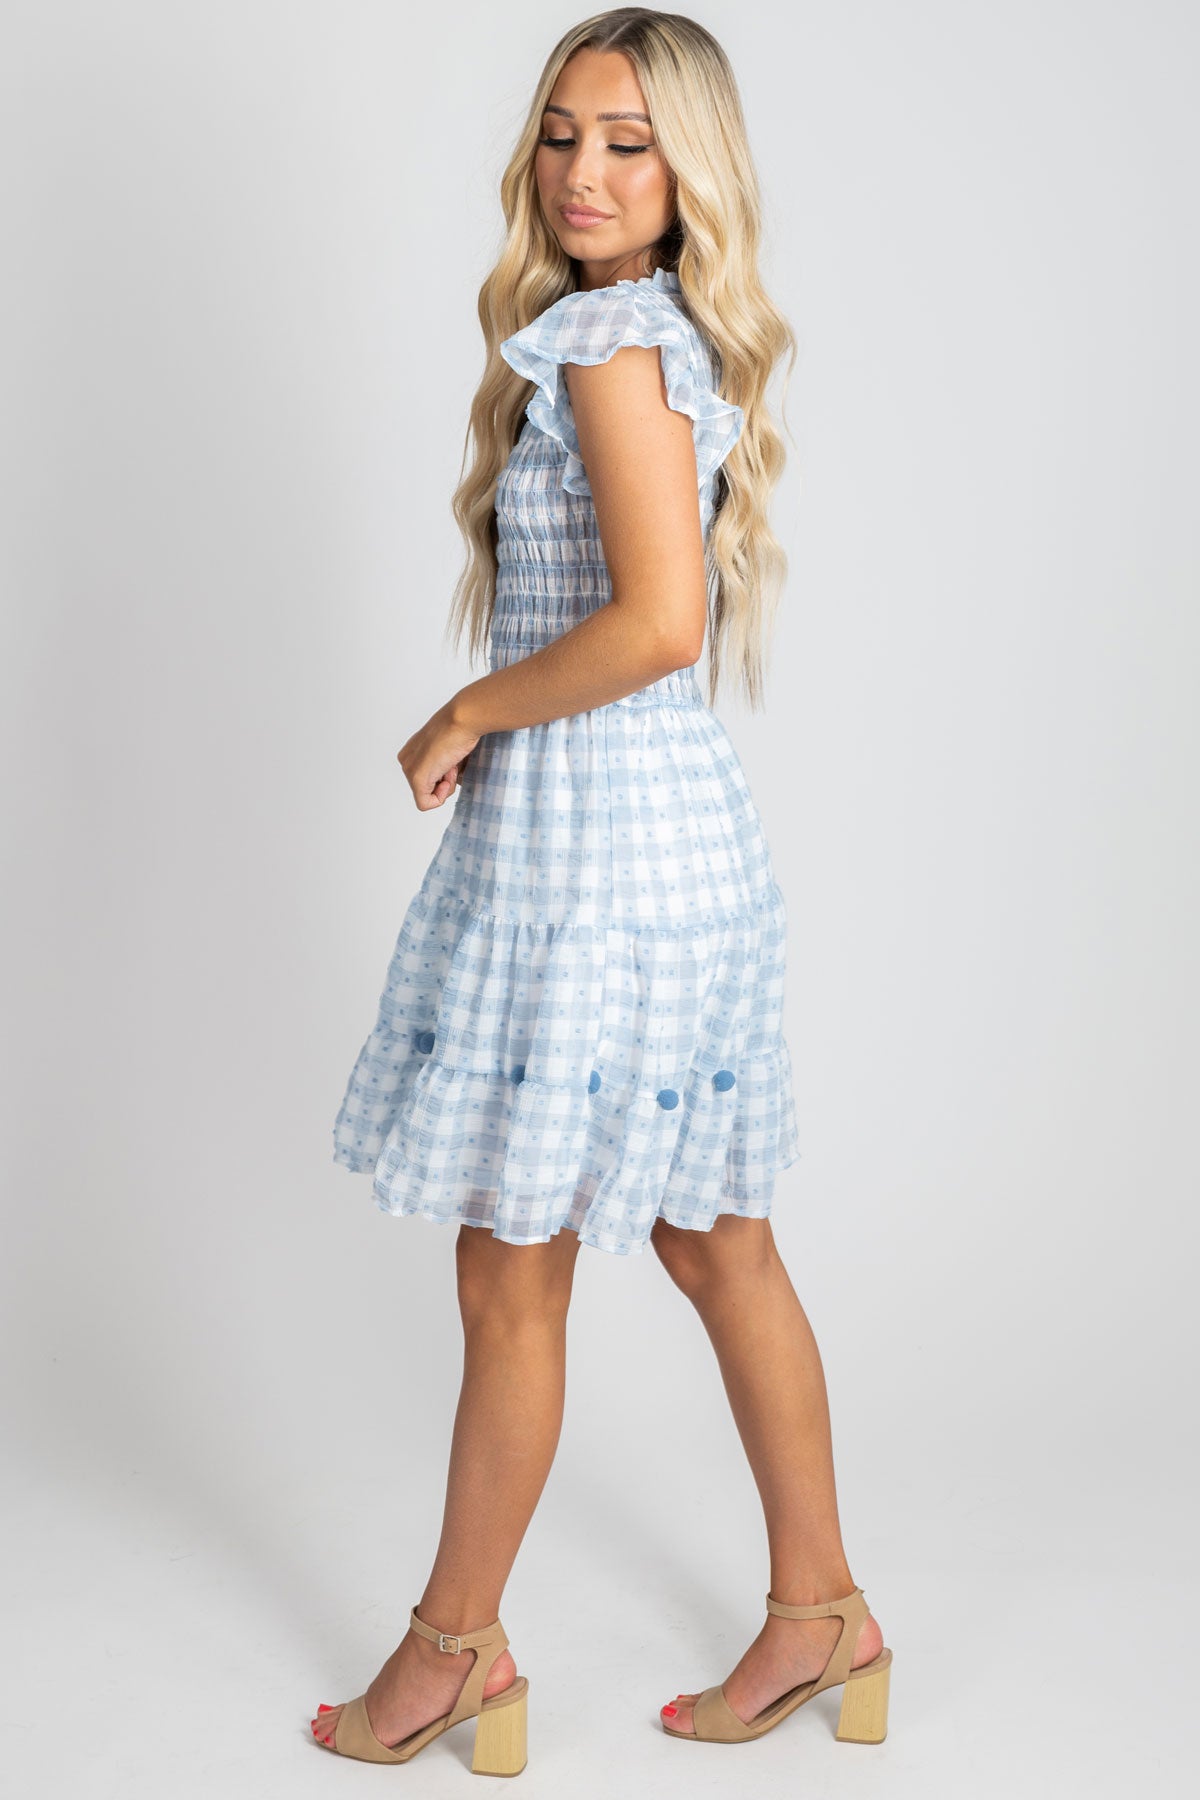 Women's Boutique Blue Plaid Mini Dress for Summer